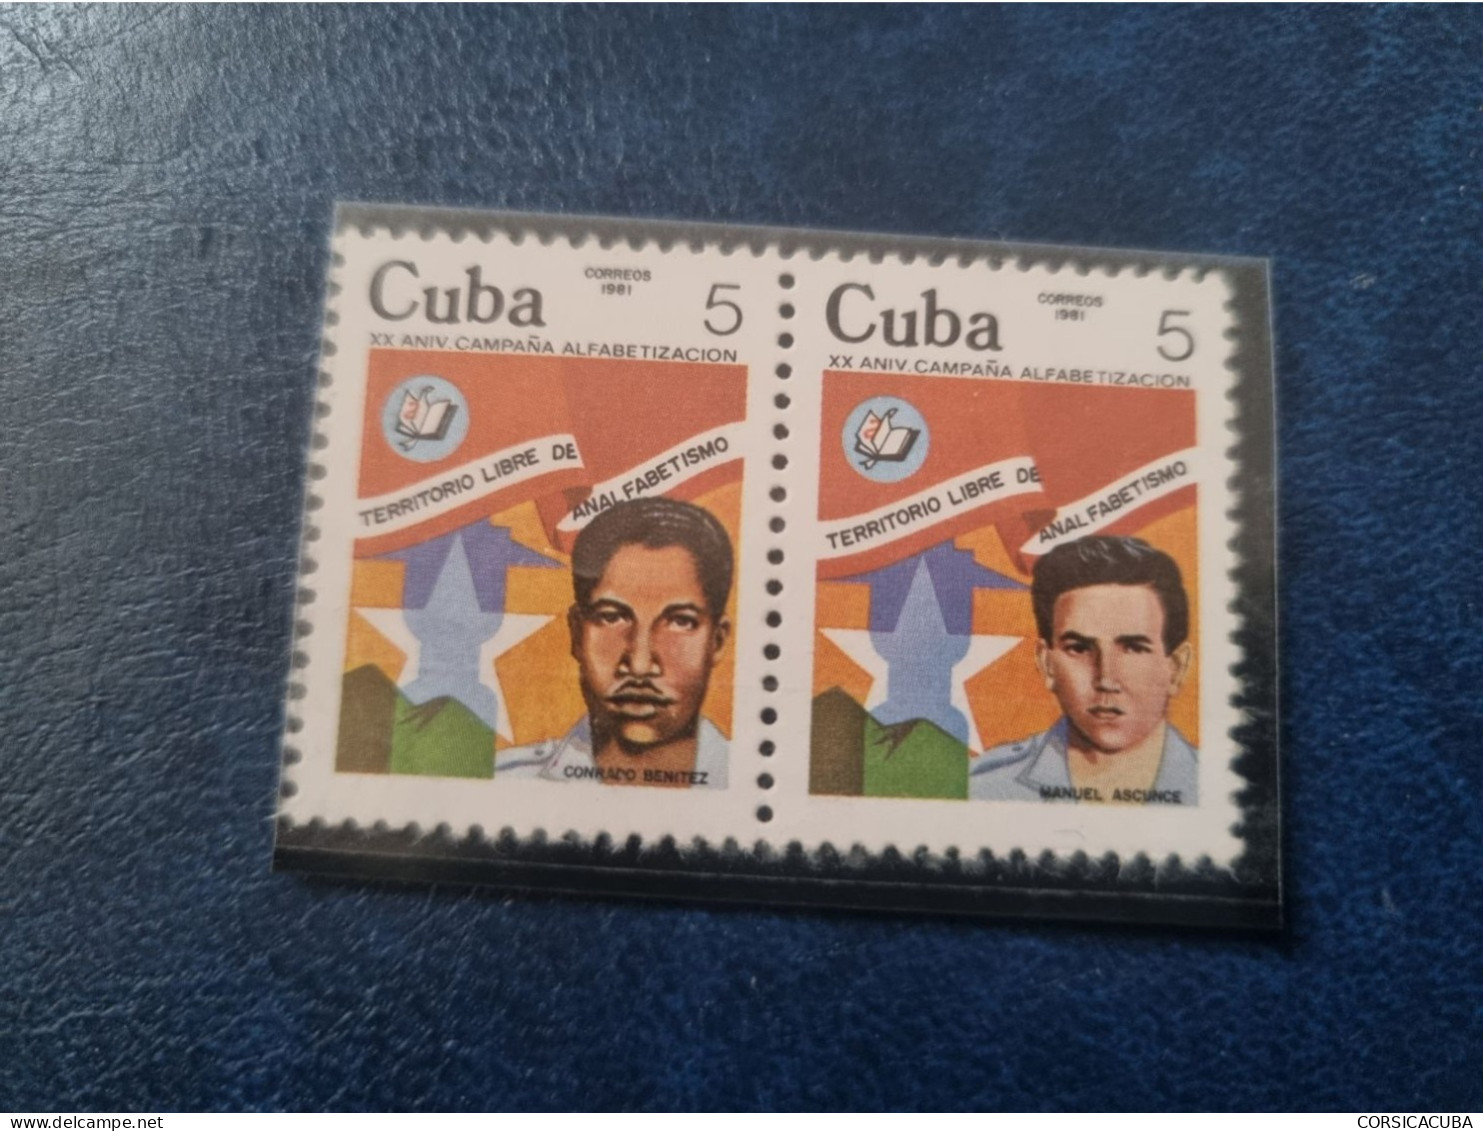 CUBA  NEUF  1981   CAMPANA  DE  ALFABETIZACION  //  PARFAIT  ETAT  //  1er  CHOIX  // Bloc De 4 - Ongebruikt